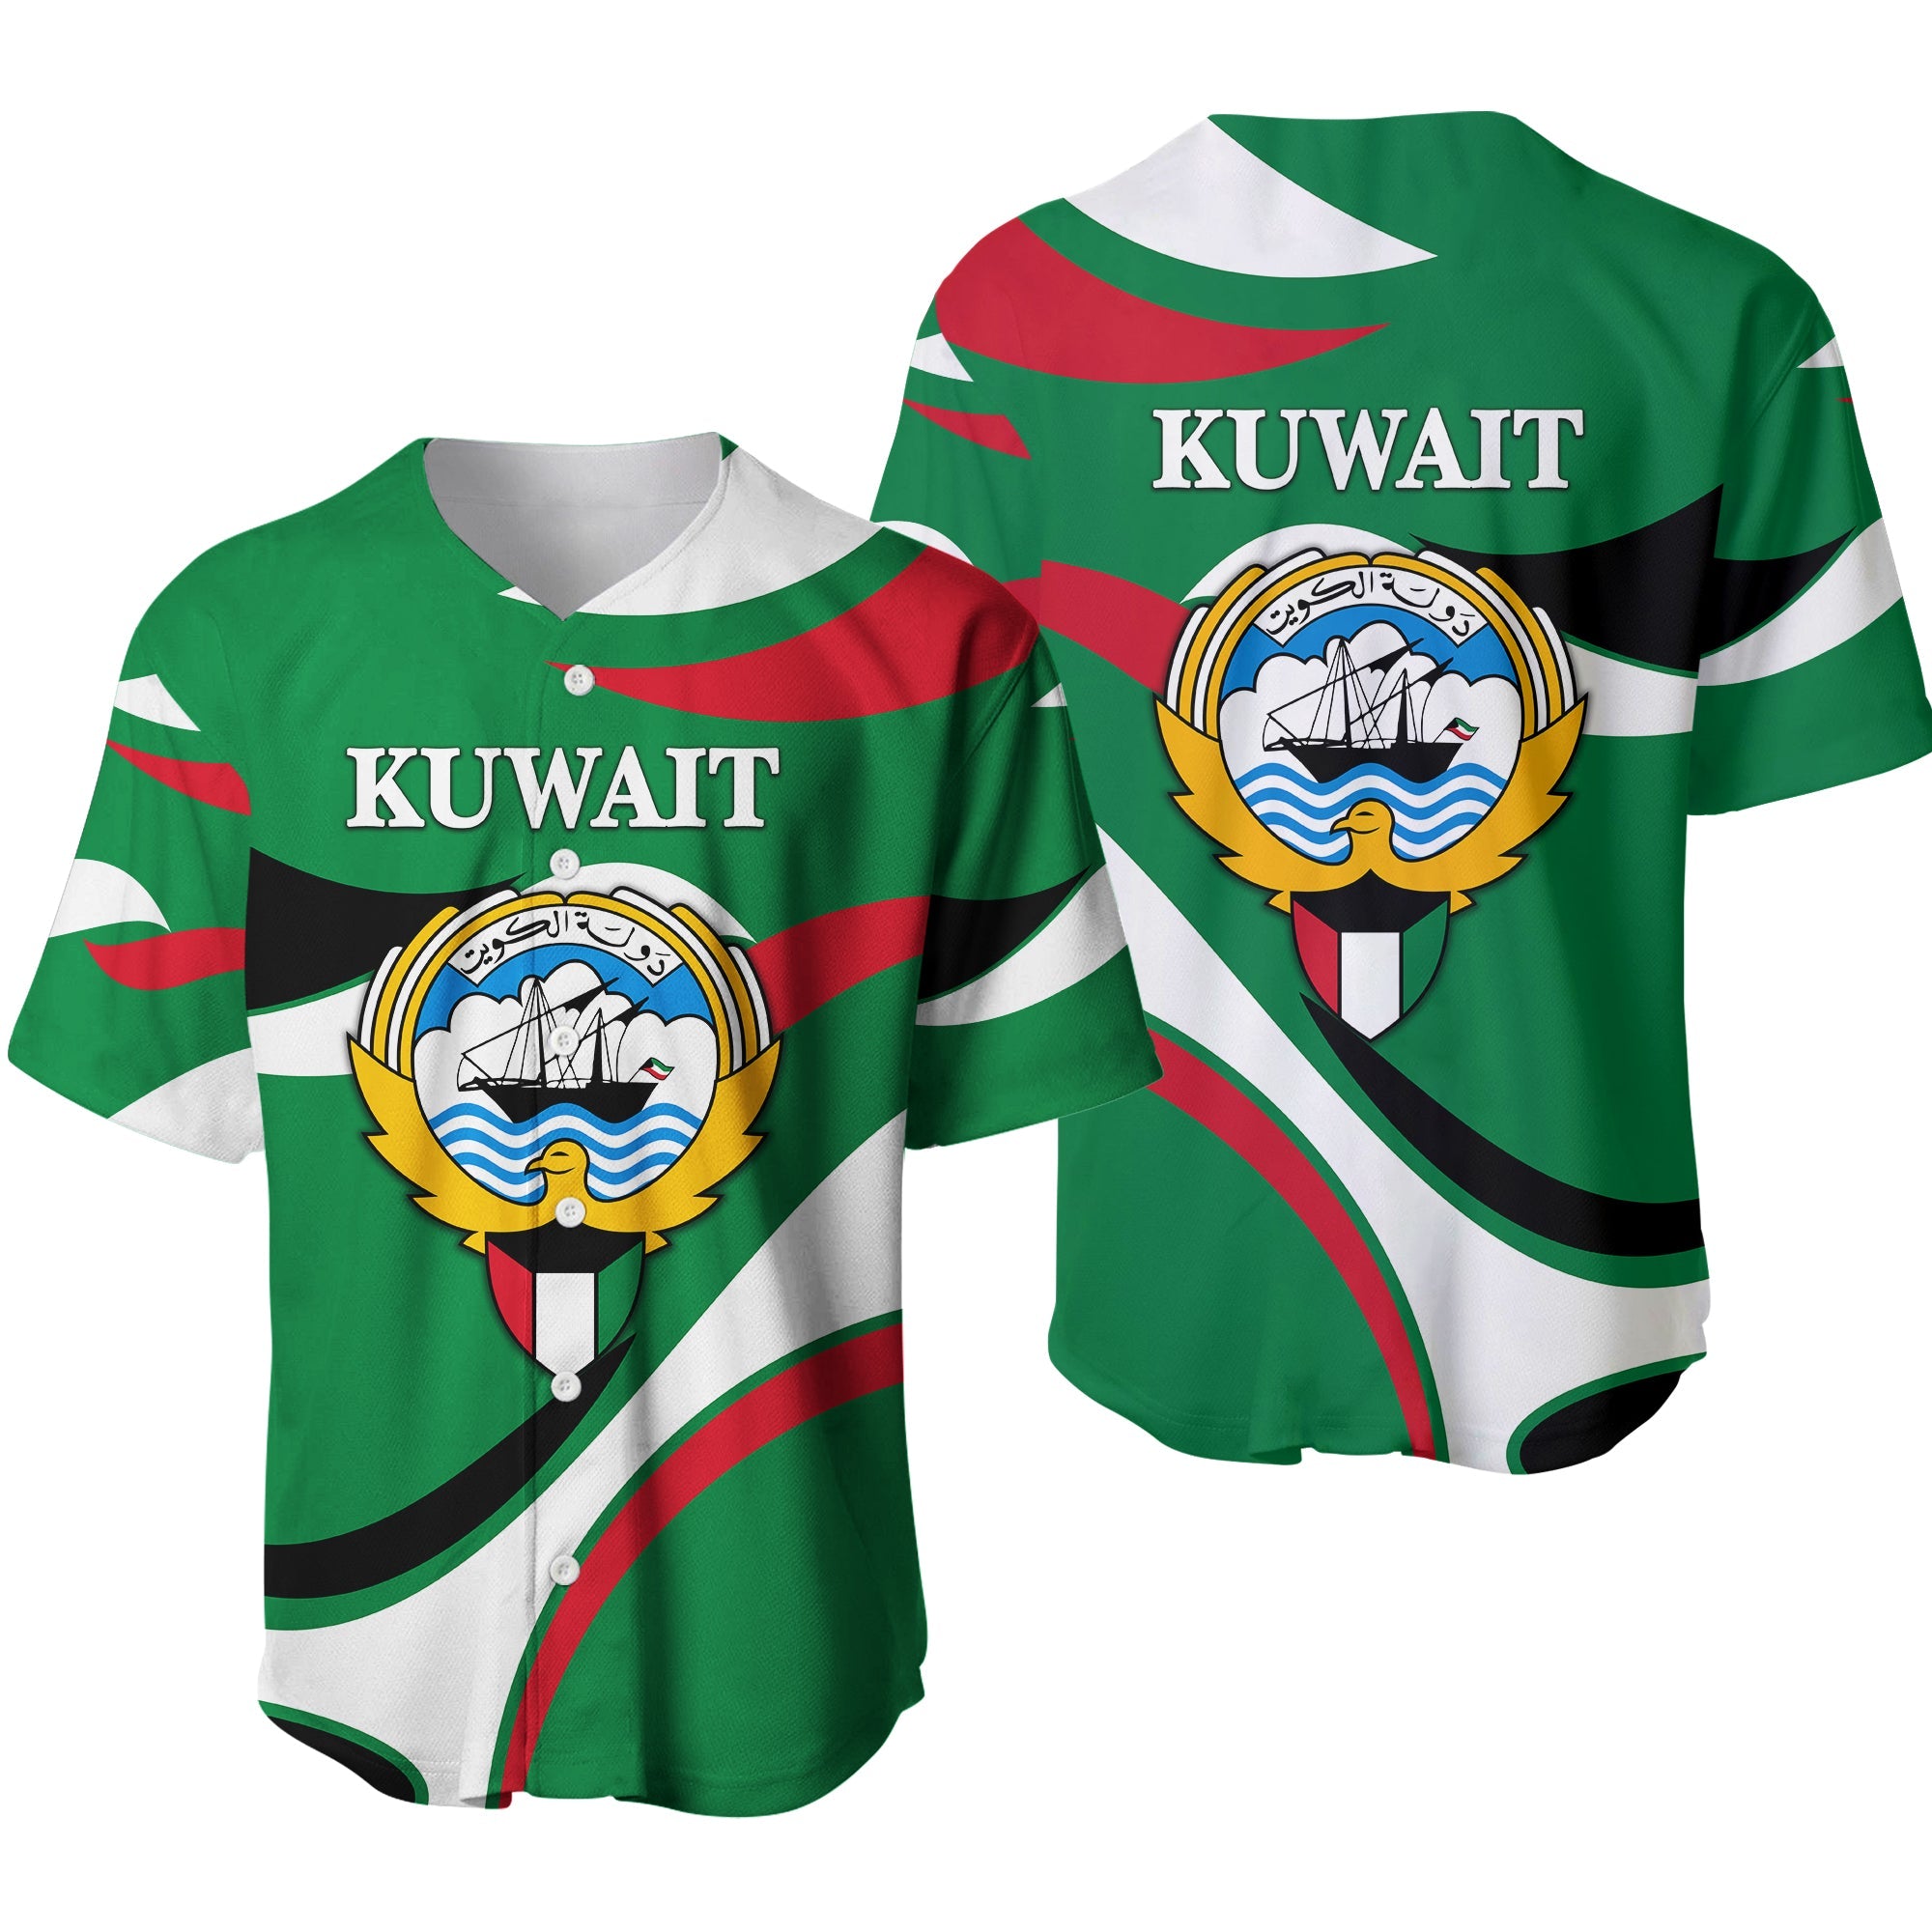 kuwait-baseball-jersey-sporty-style-green